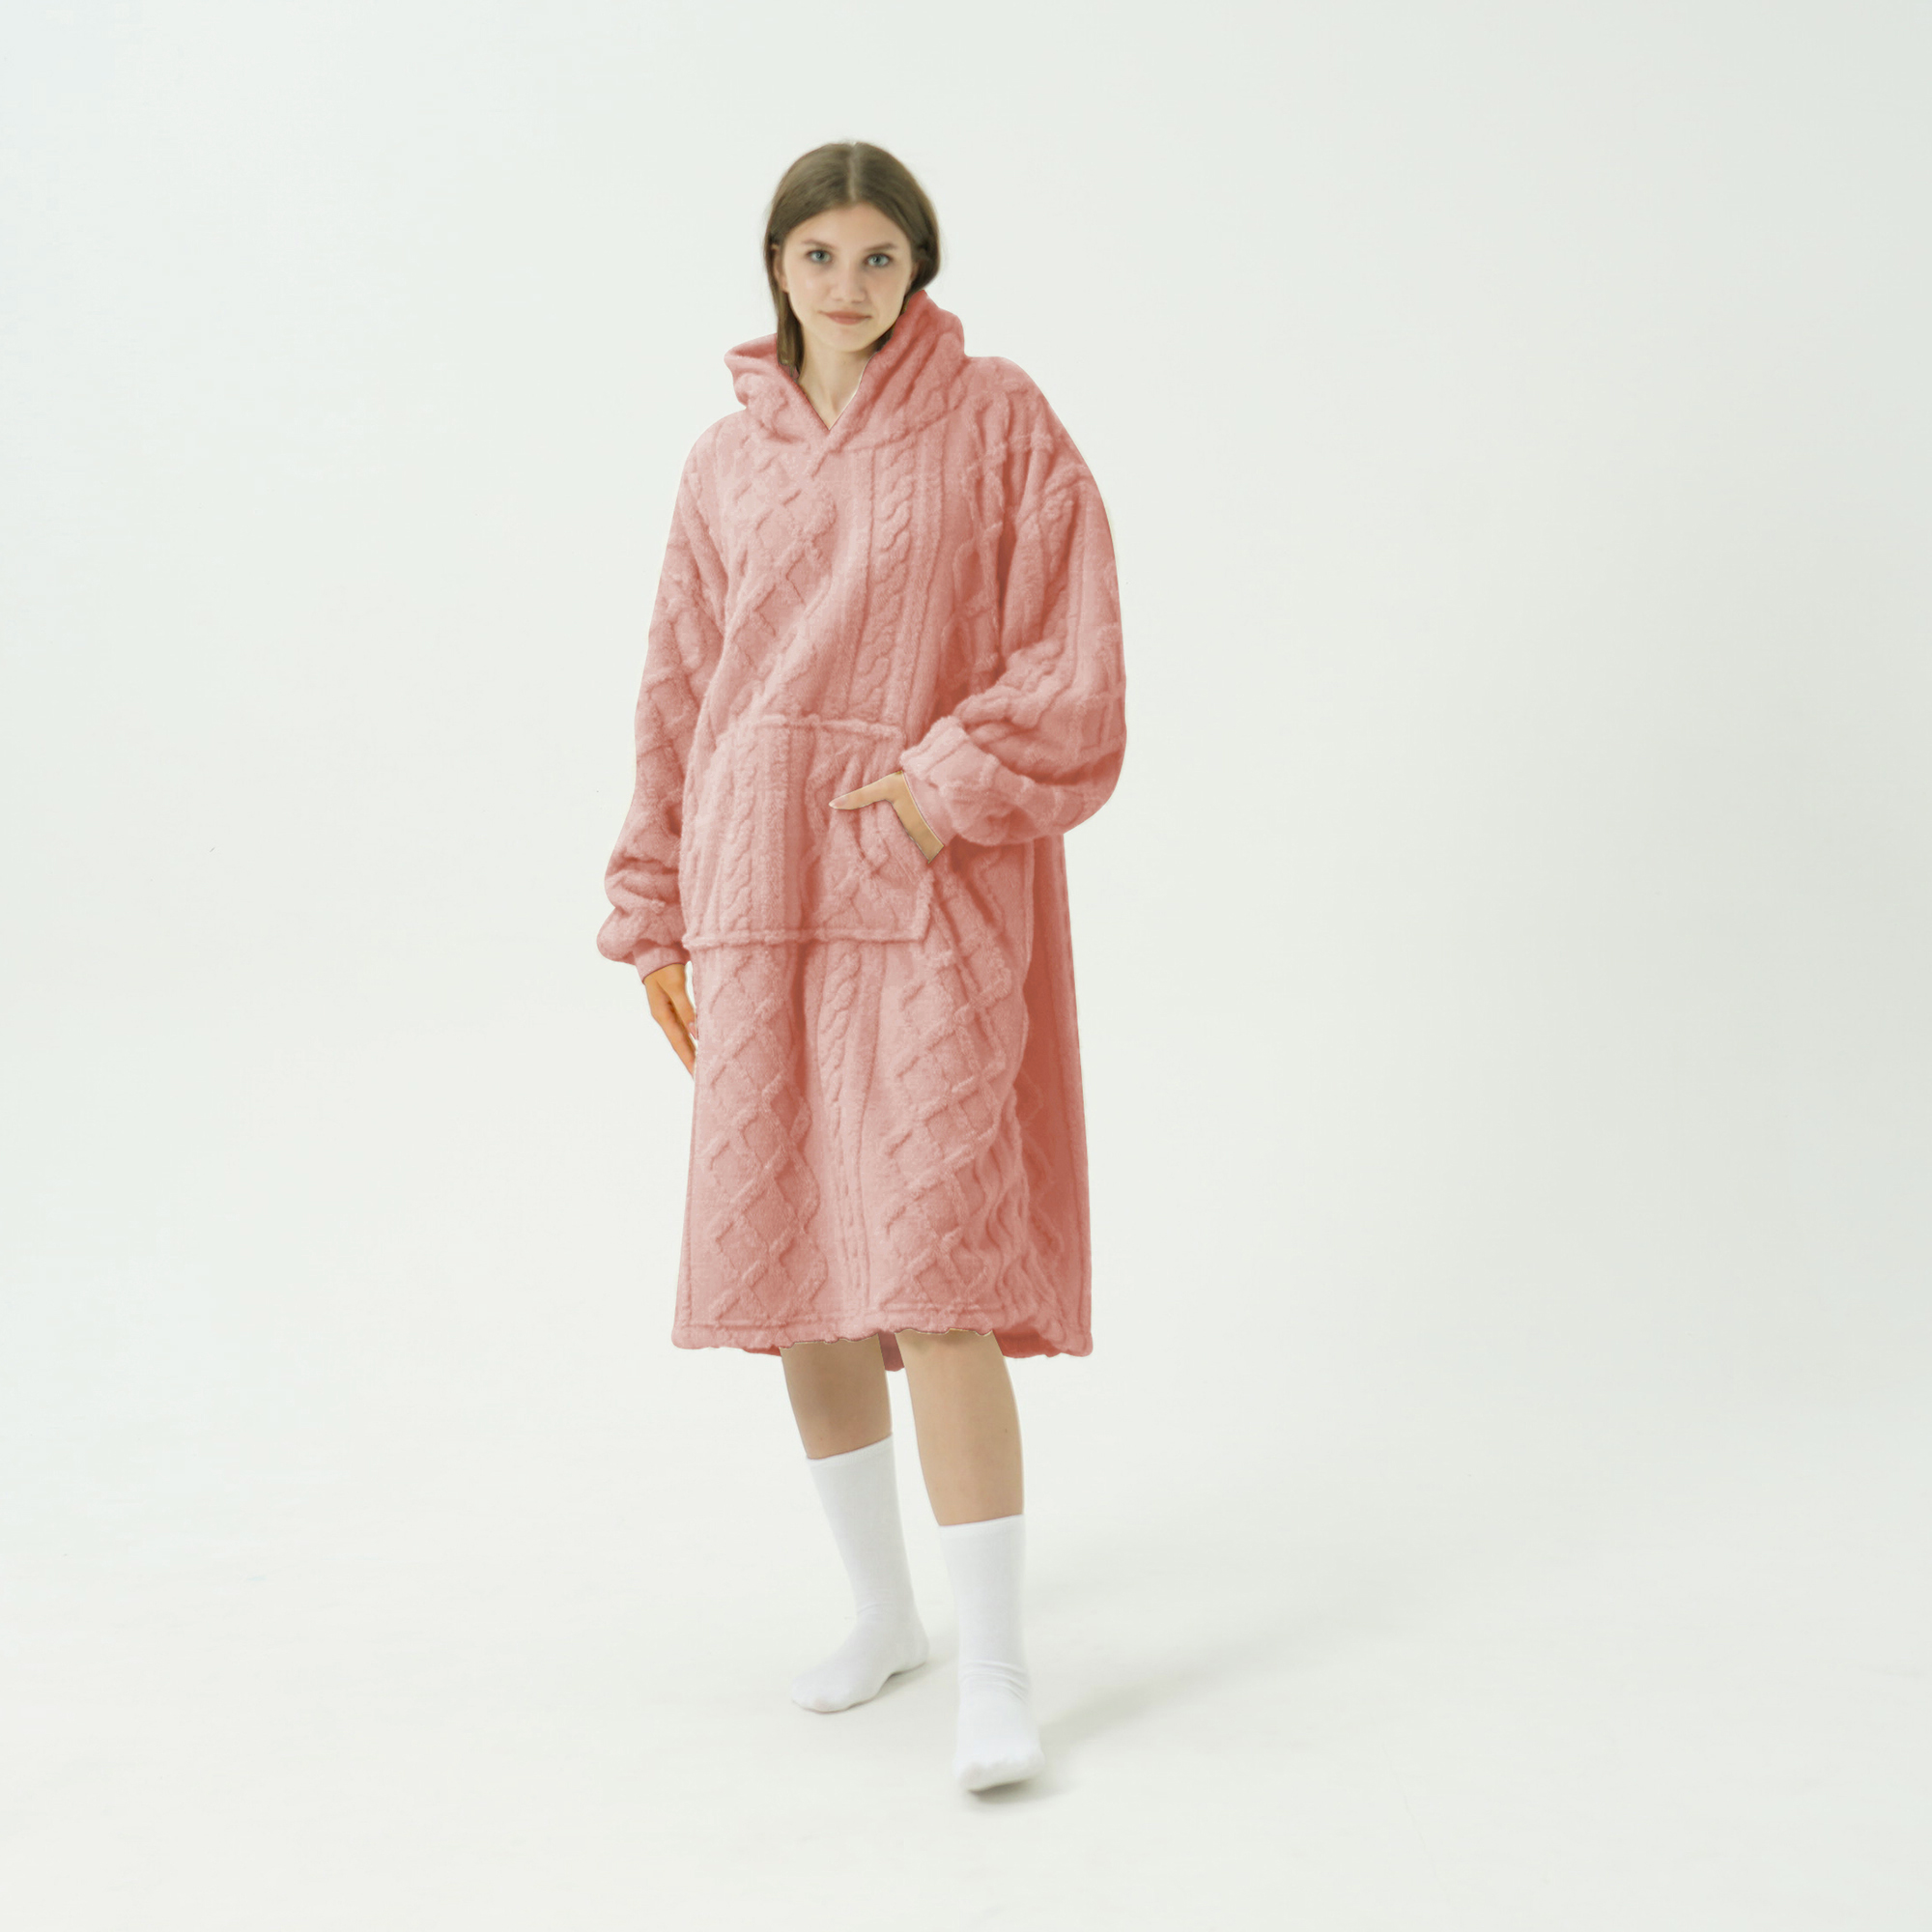 SOPHIE Oversized Hoodie - 70x110 cm - Hoodie & deken in één - extra grote kabeltrui met capuchon - Rose Tan - roze